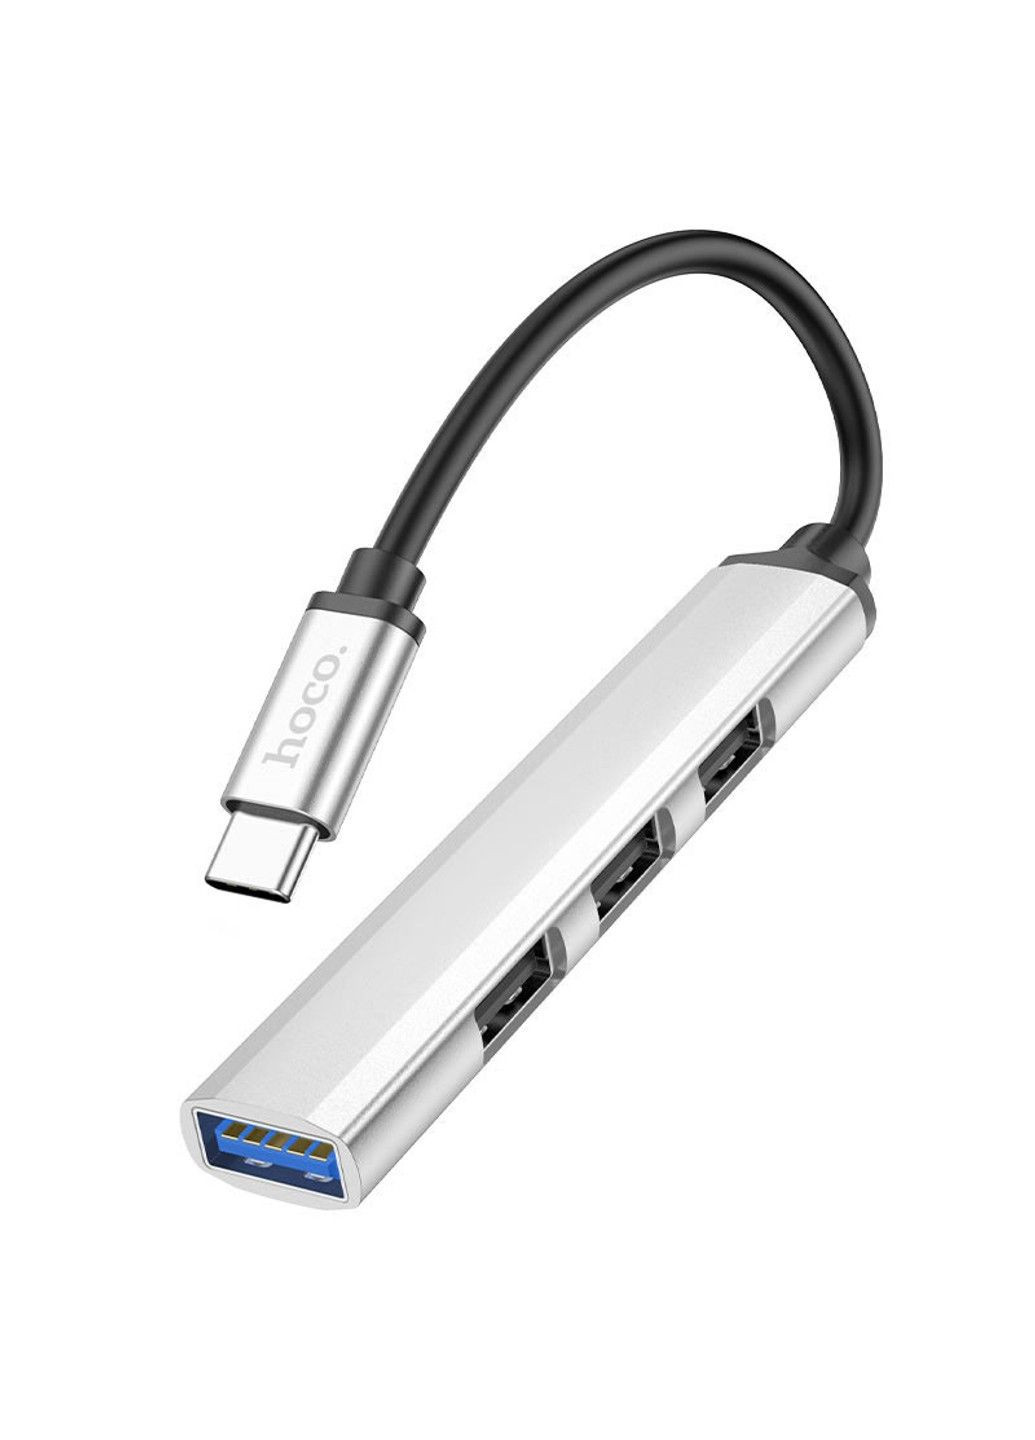 Переходник HB26 4in1 (Type-C to USB3.0+USB2.0*3) Hoco (290707453)